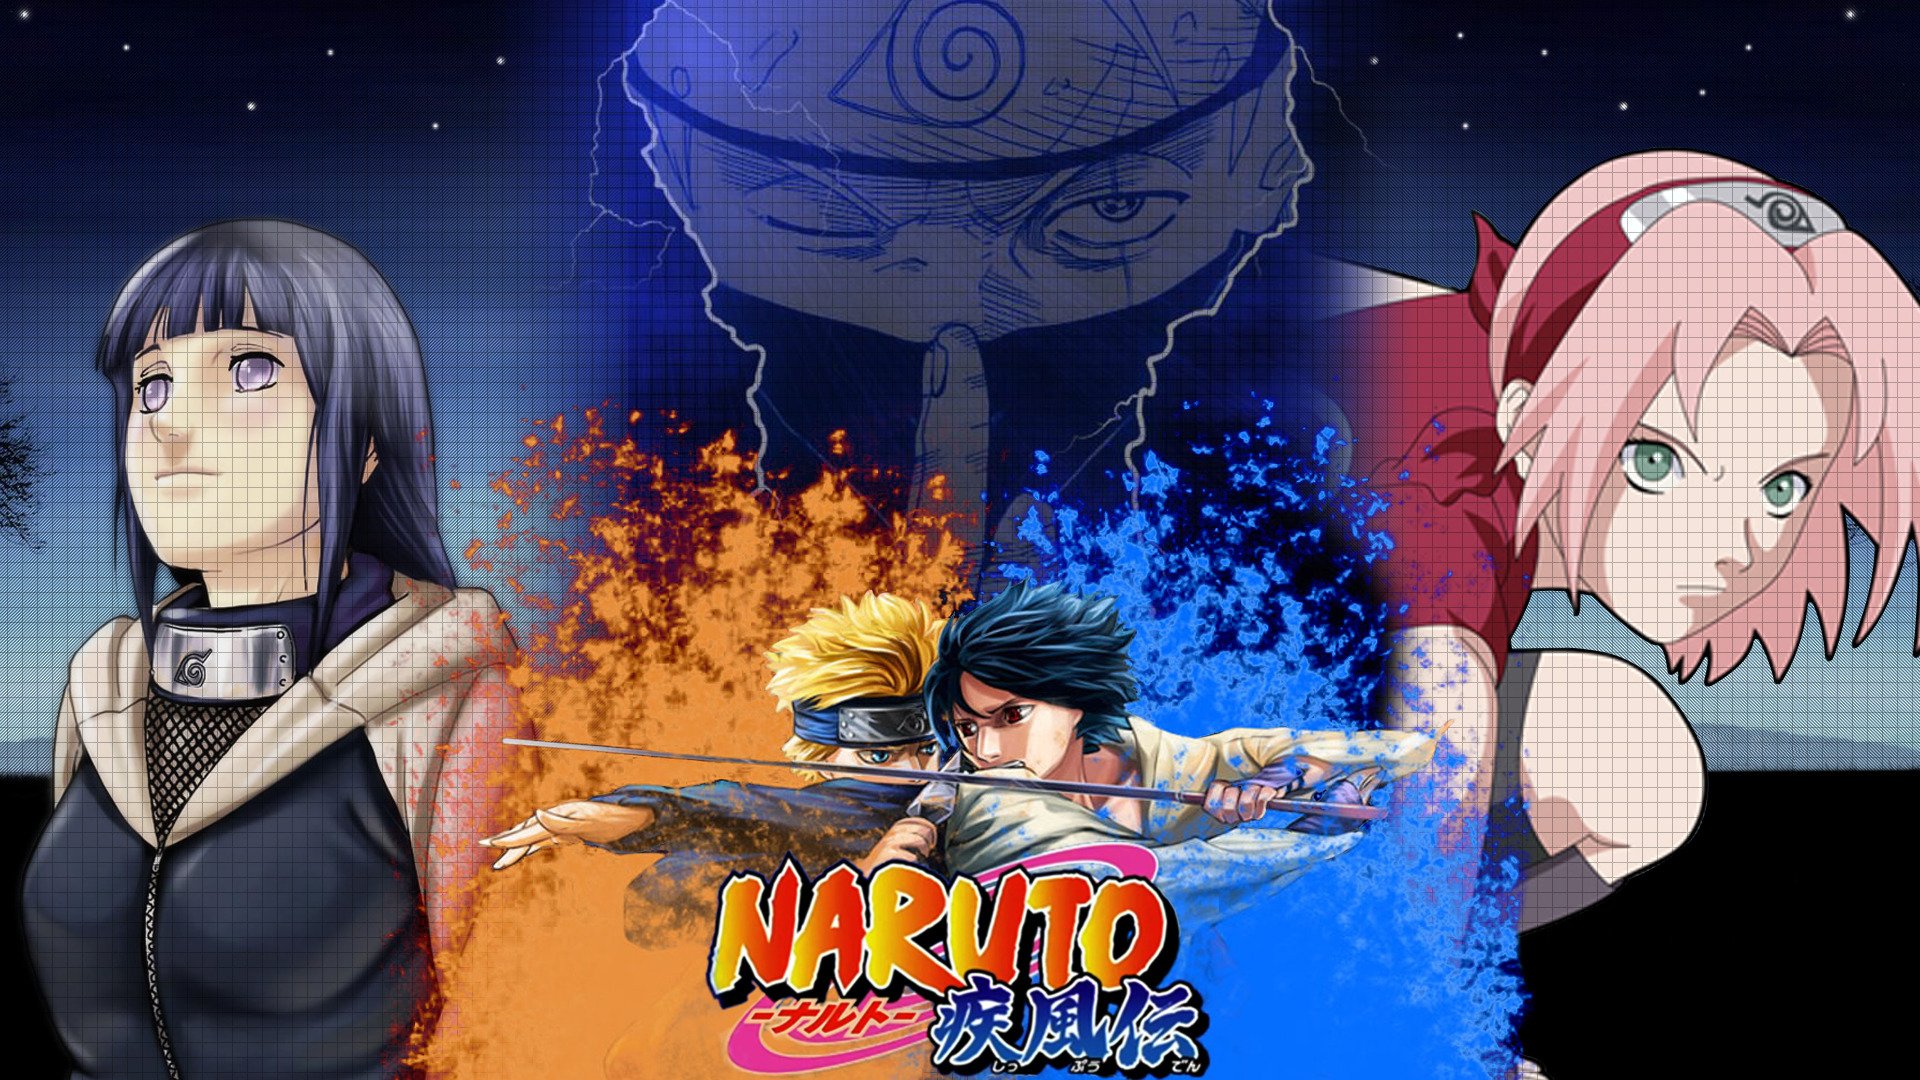 48+] Naruto vs Sasuke Wallpaper Shippuden - WallpaperSafari